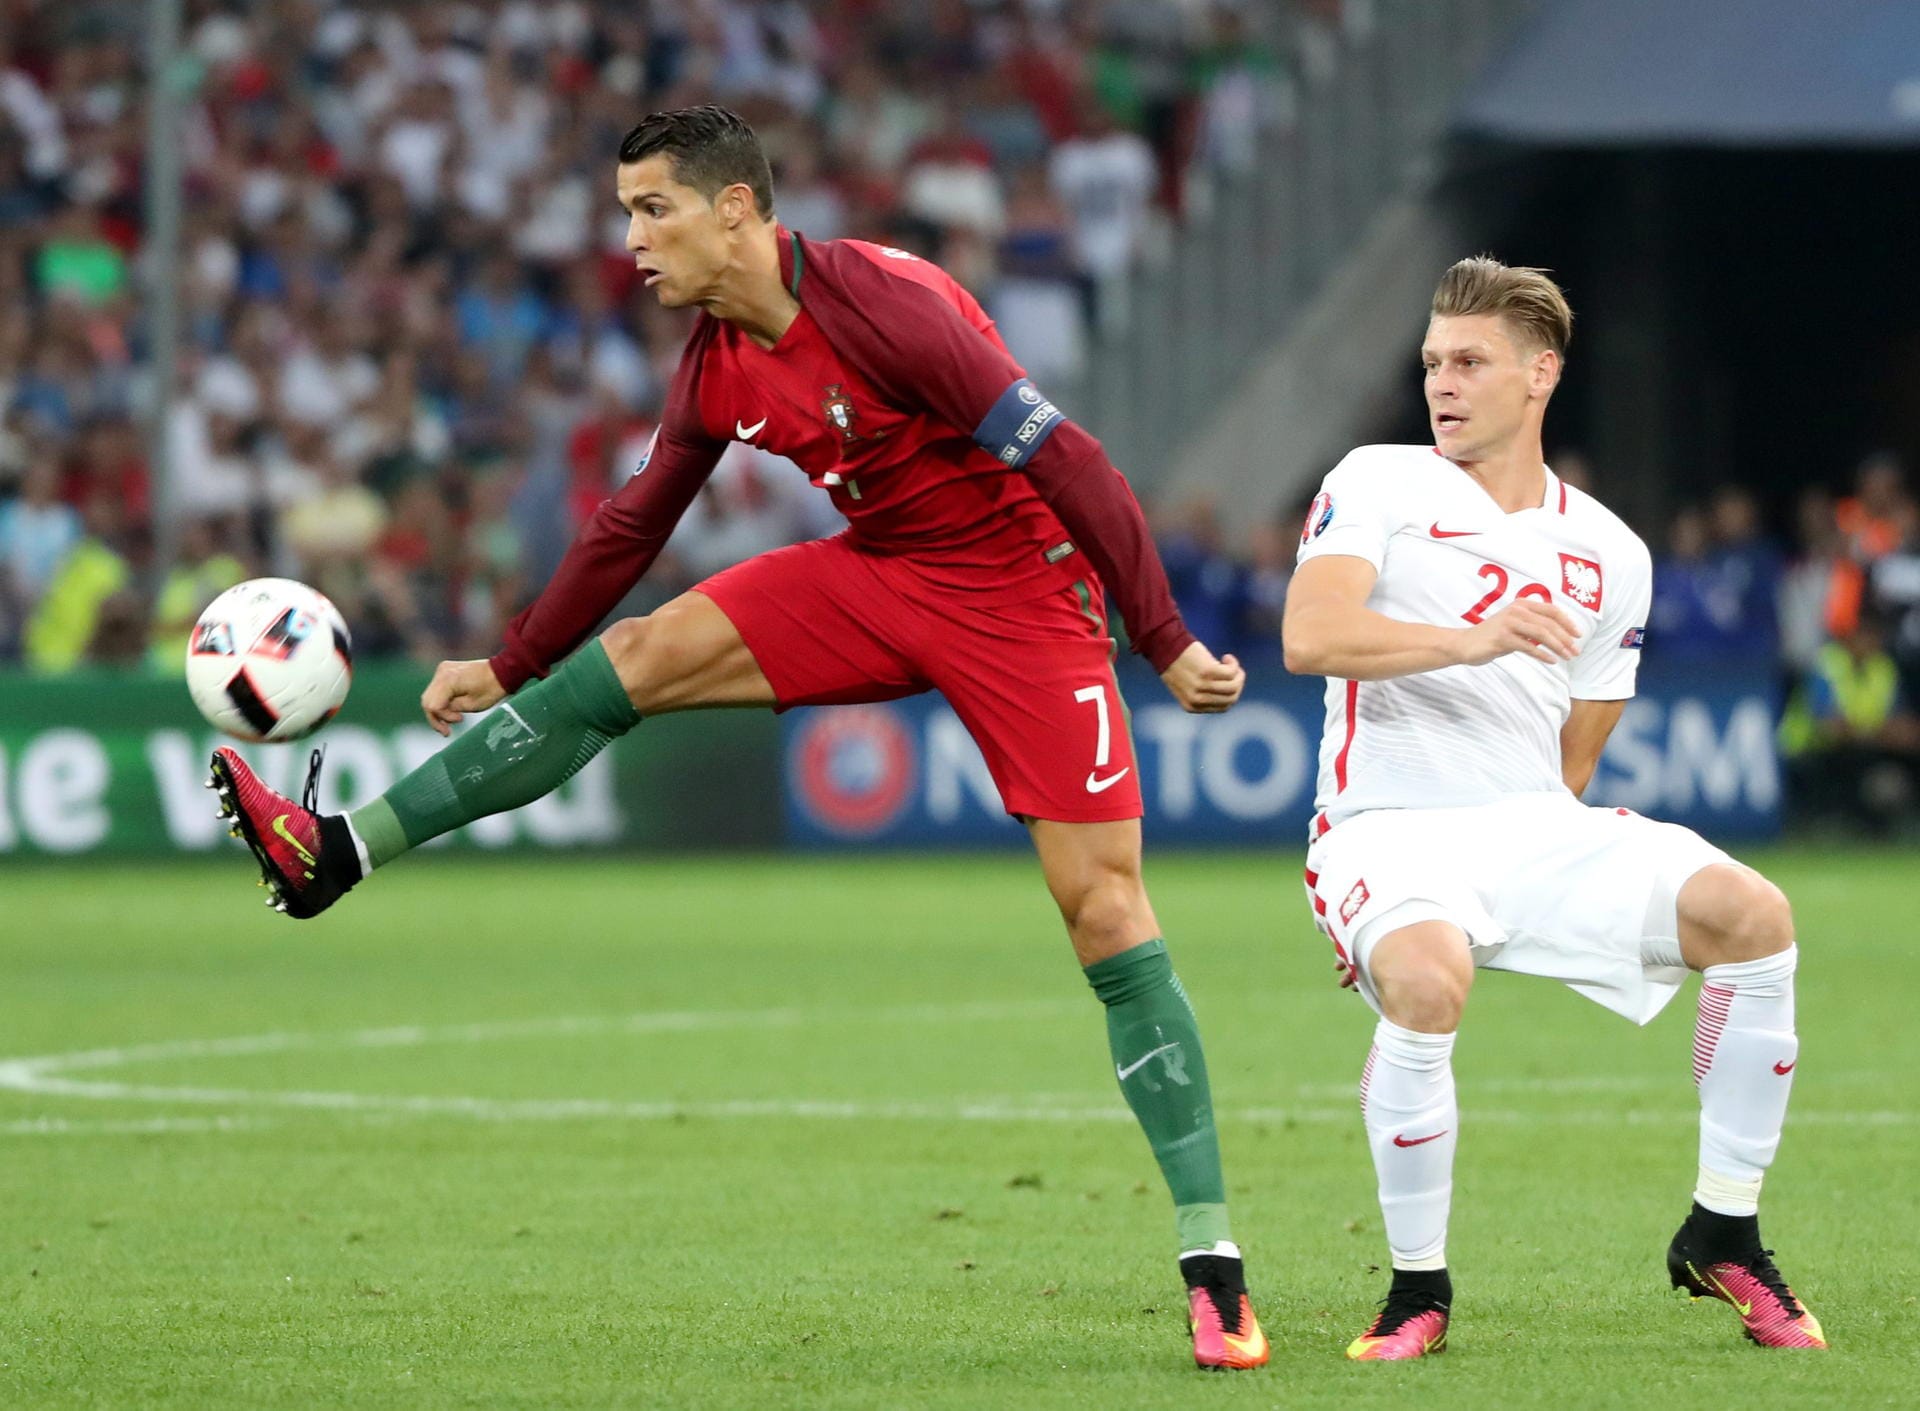 Portugal findet erst Mitte der ersten Spielhälfte in die Partie. Cristiano Ronaldo (li.) - hier klar vor Lukasz Piszczek am Ball - initiiert die erste Chance für die Mannschaft von Fernando Santos, scheitert per Distanzschuss jedoch an Polens Keeper Lukasz Fabianski.